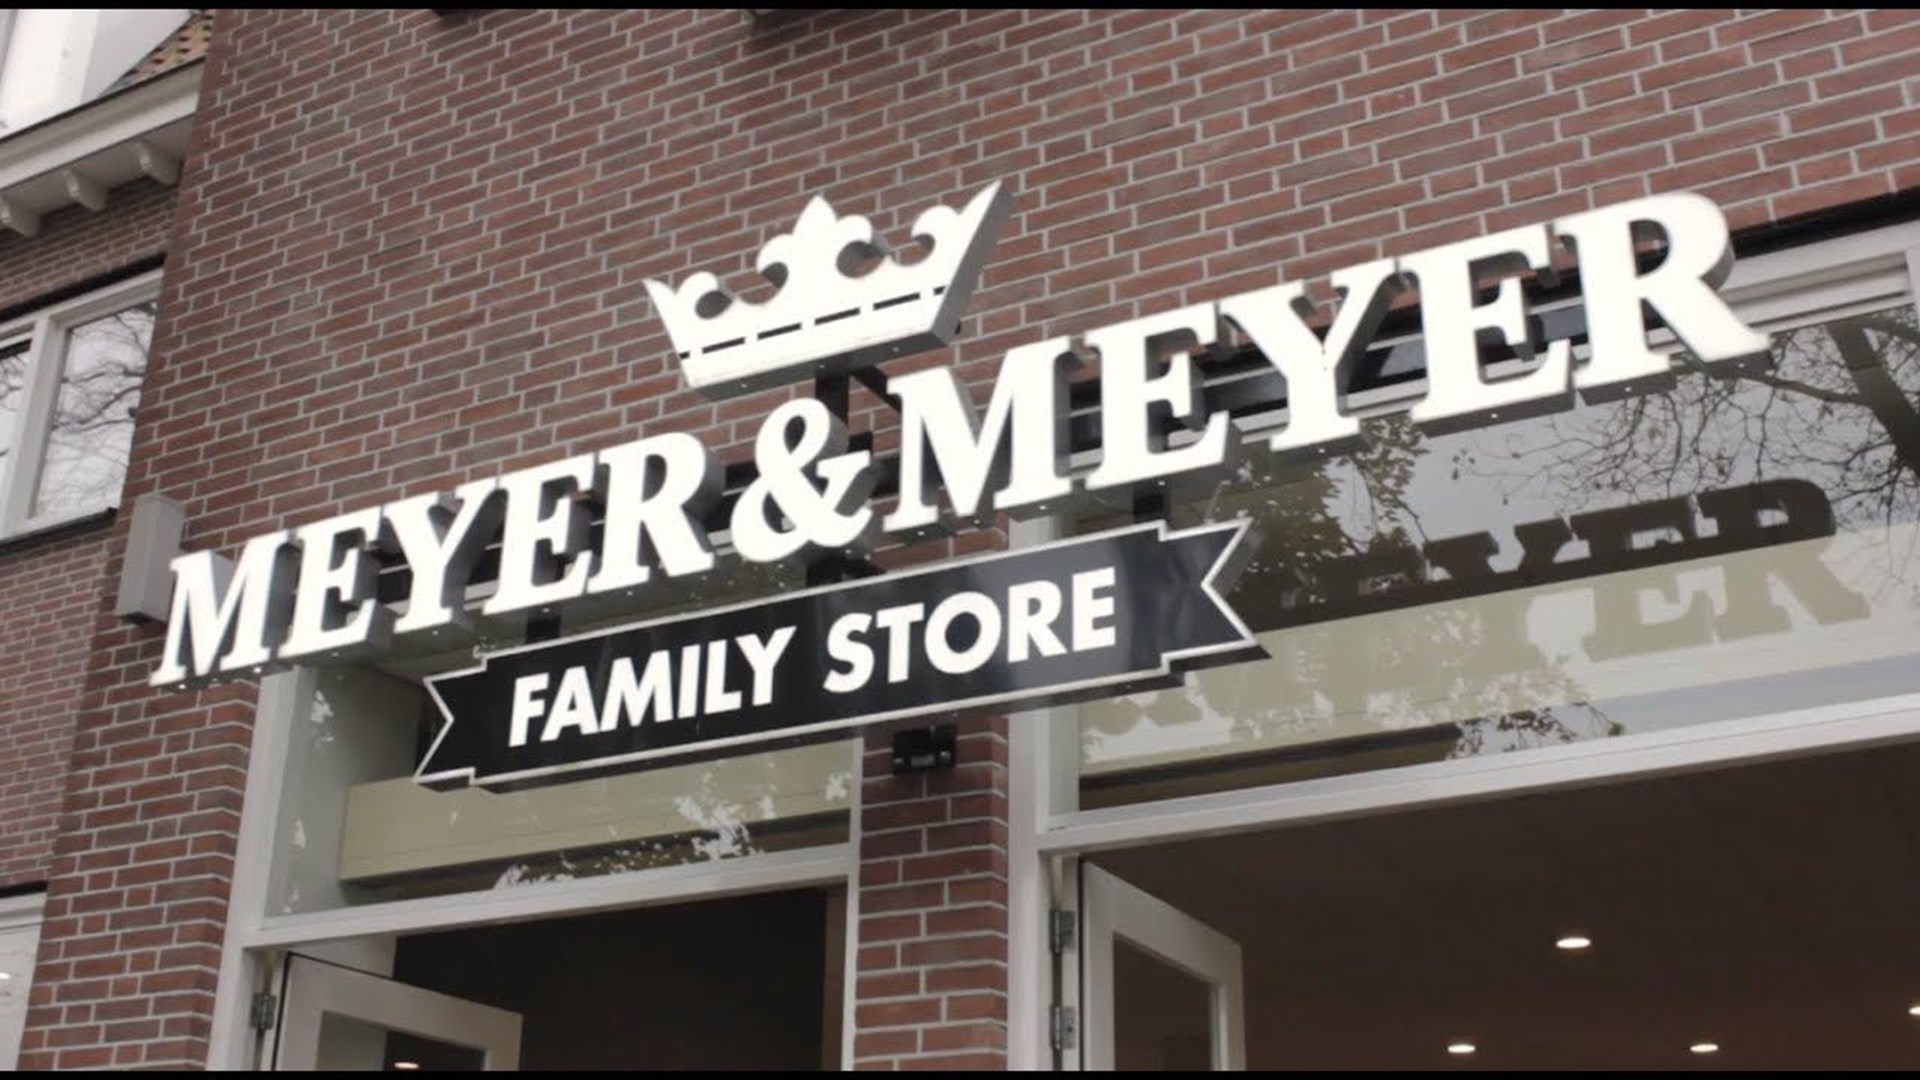 Meyer & Meyer Familystore banner